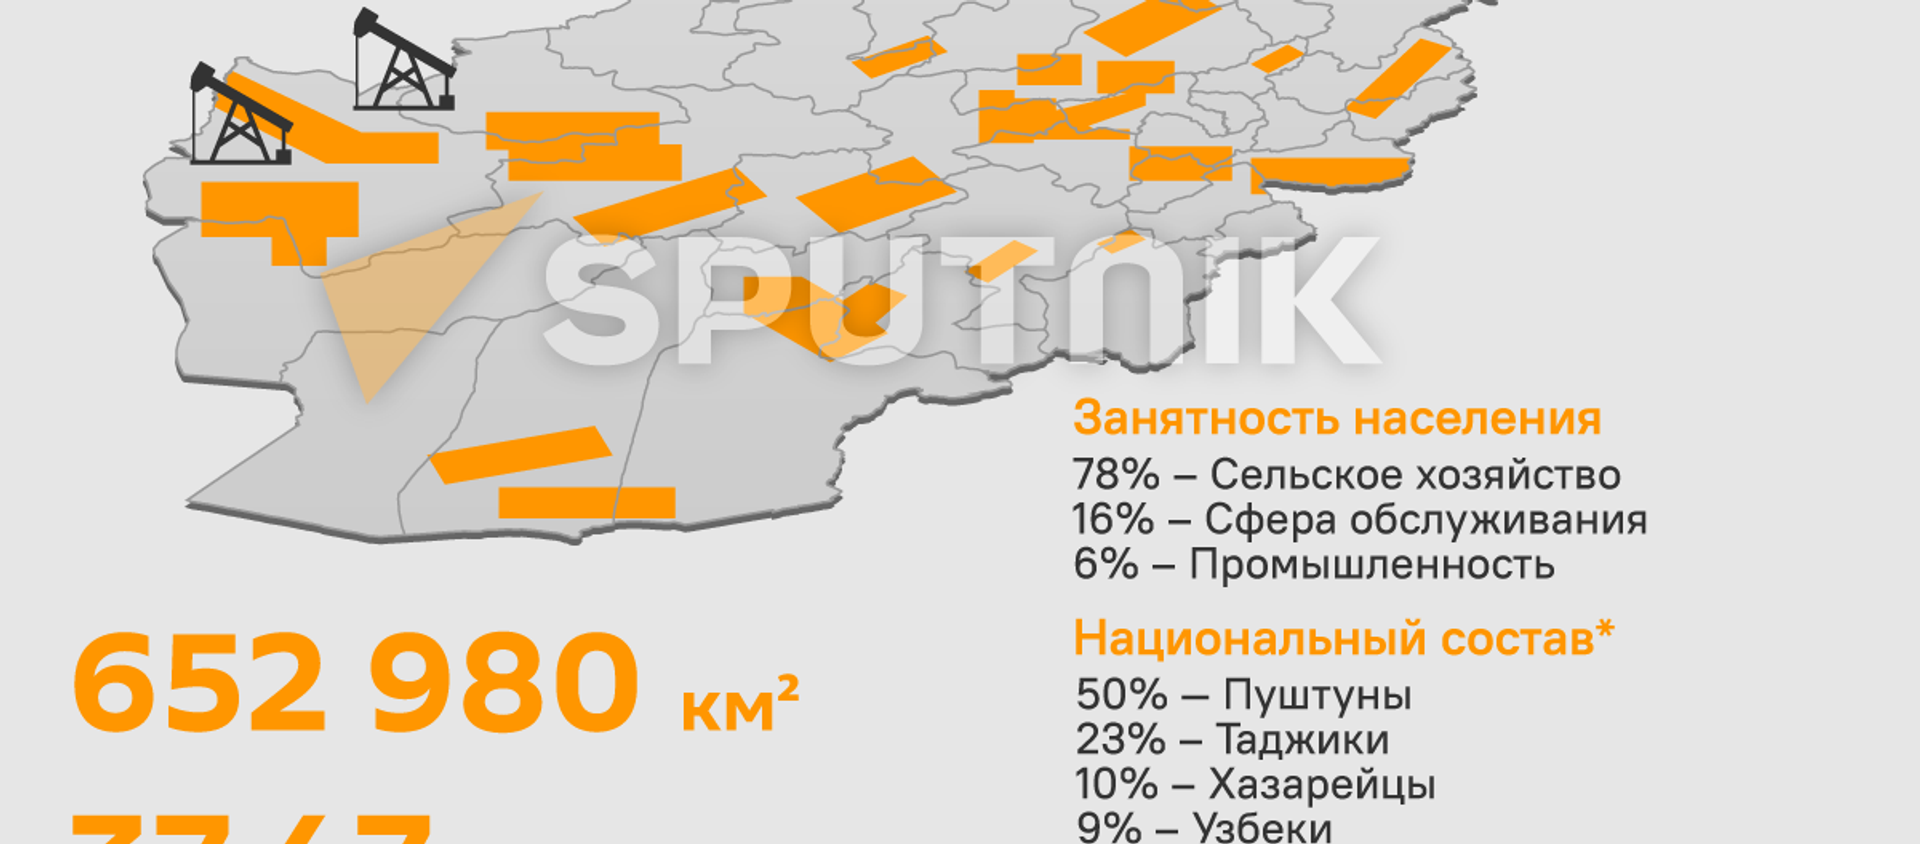 Афганистан: население и ресурсы - Sputnik Кыргызстан, 1920, 19.08.2021